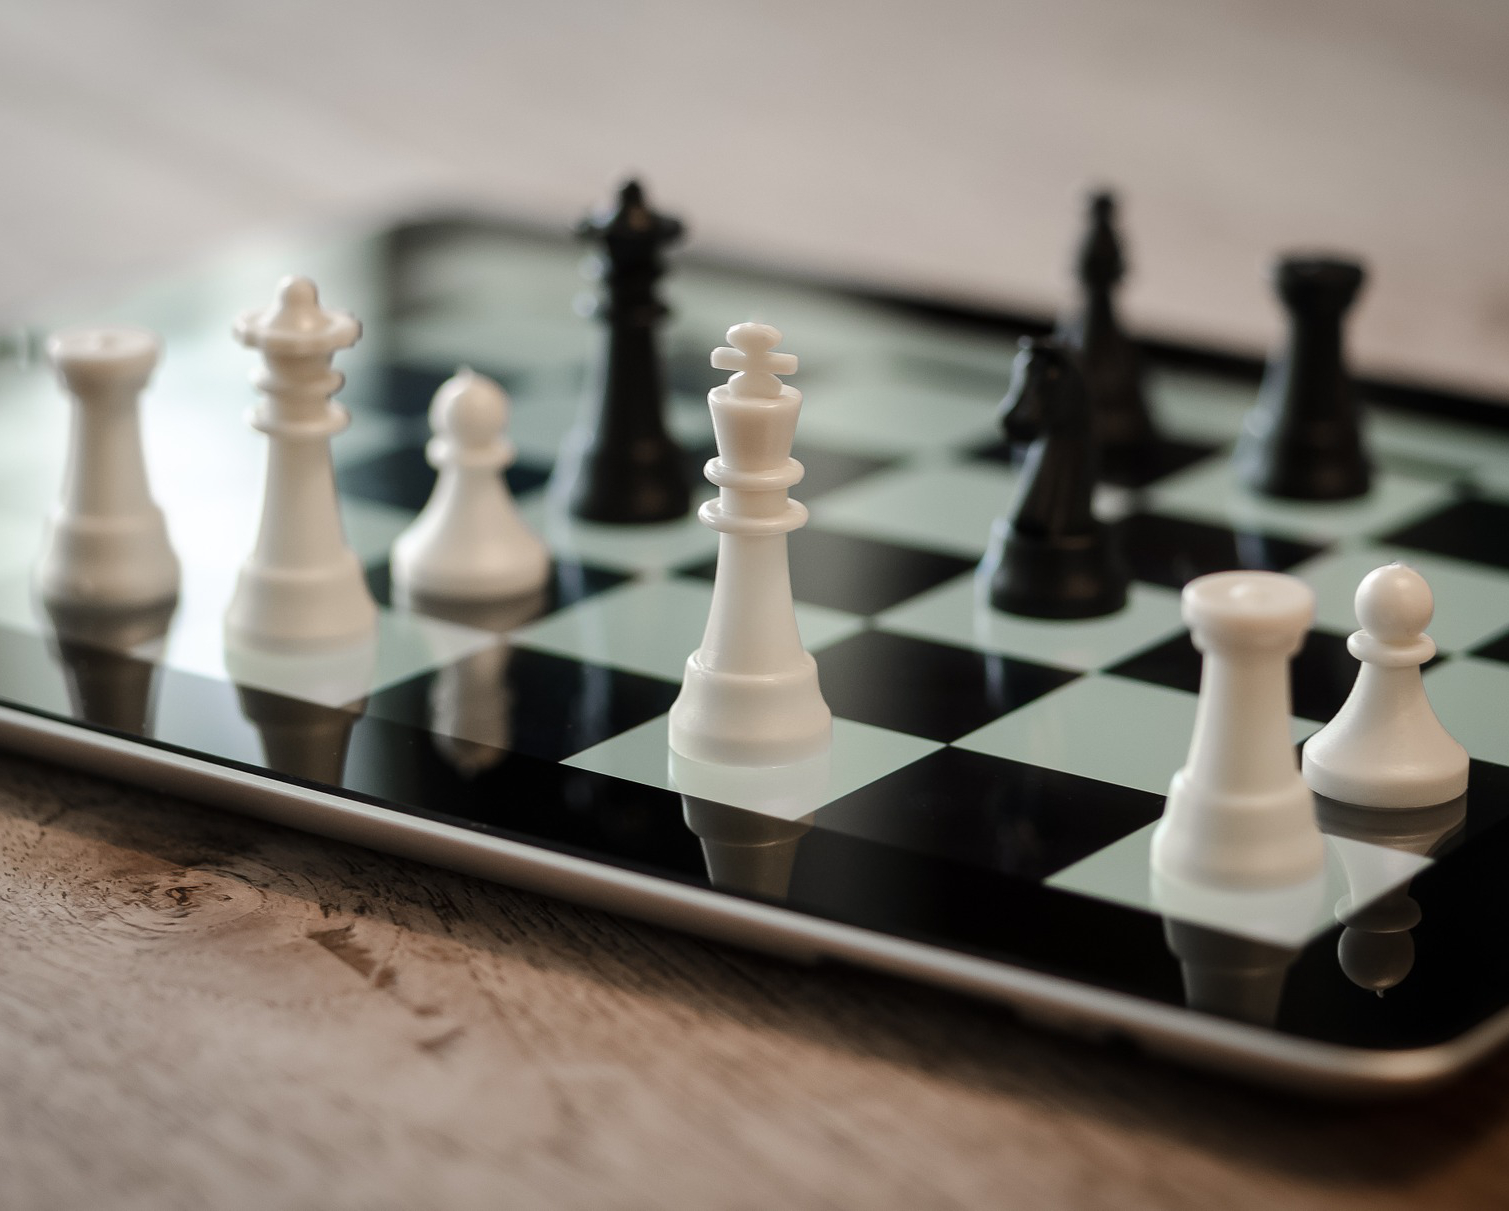 Plutôt que de laisser notre smartphone calculer le meilleur coup sur un jeu d'échecs, pourquoi ne pas épargner sa batterie en déportant le calcul vers un serveur à proximité ?